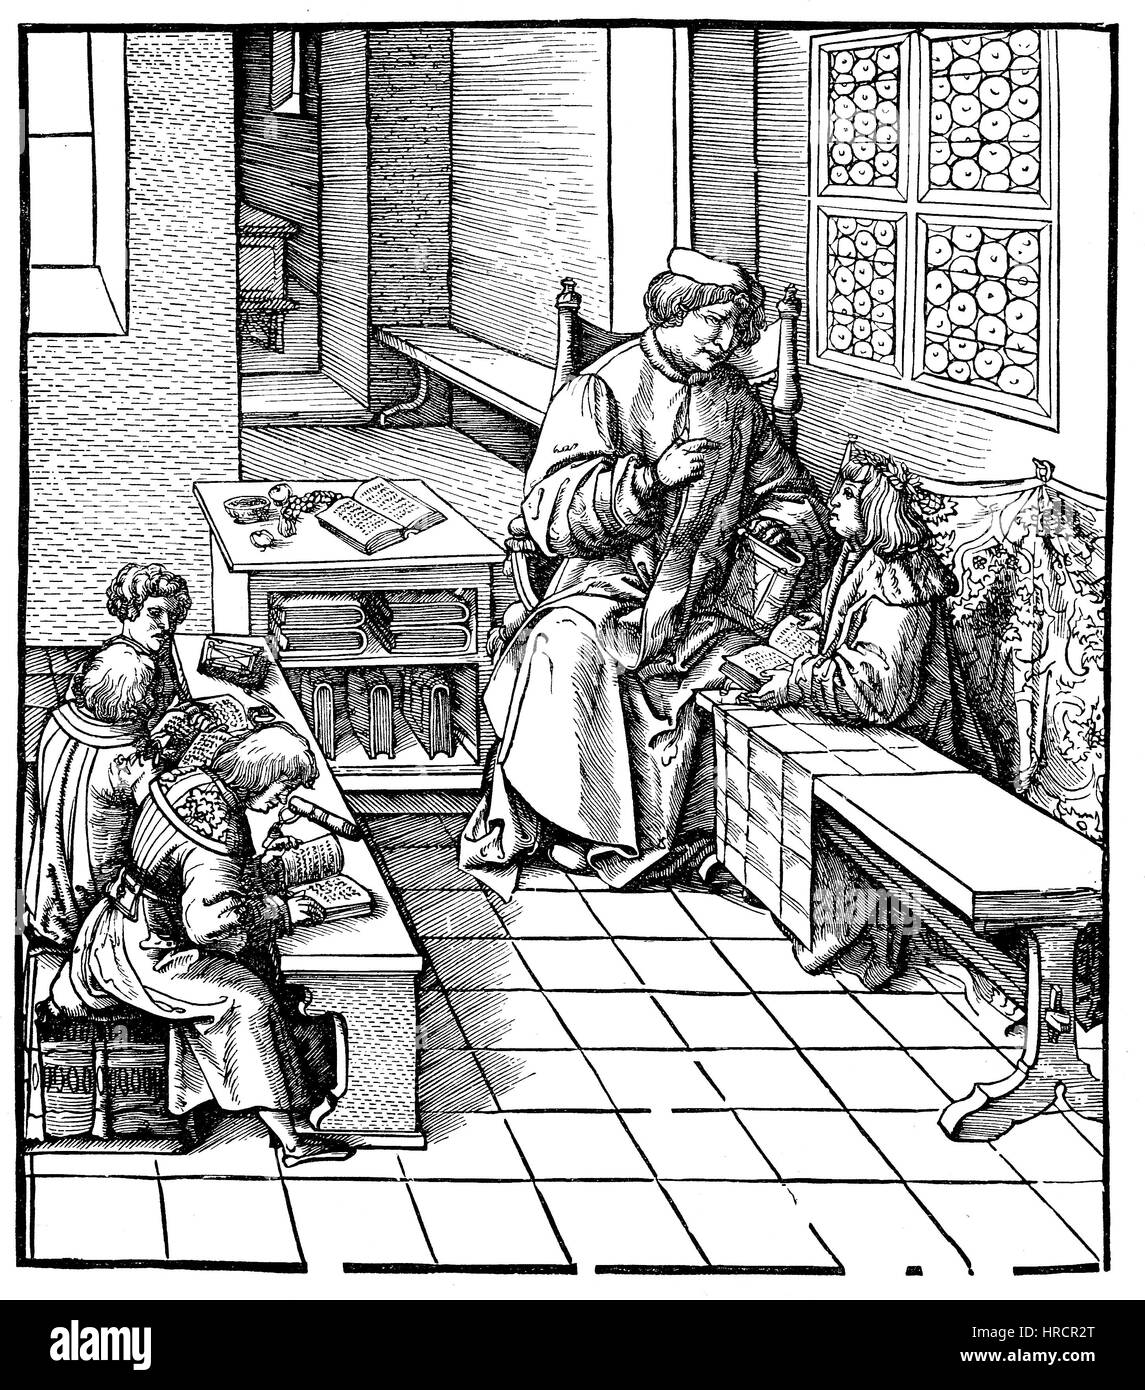 Maximilien reçoit des leçons, fac-similé d'une gravure sur bois, illustré par Hans Burgkmair, 1473-1531, l'Allemagne, Maximilian I., 1459 - 1519, la reproduction d'une gravure sur bois du xixe siècle, 1885 Banque D'Images